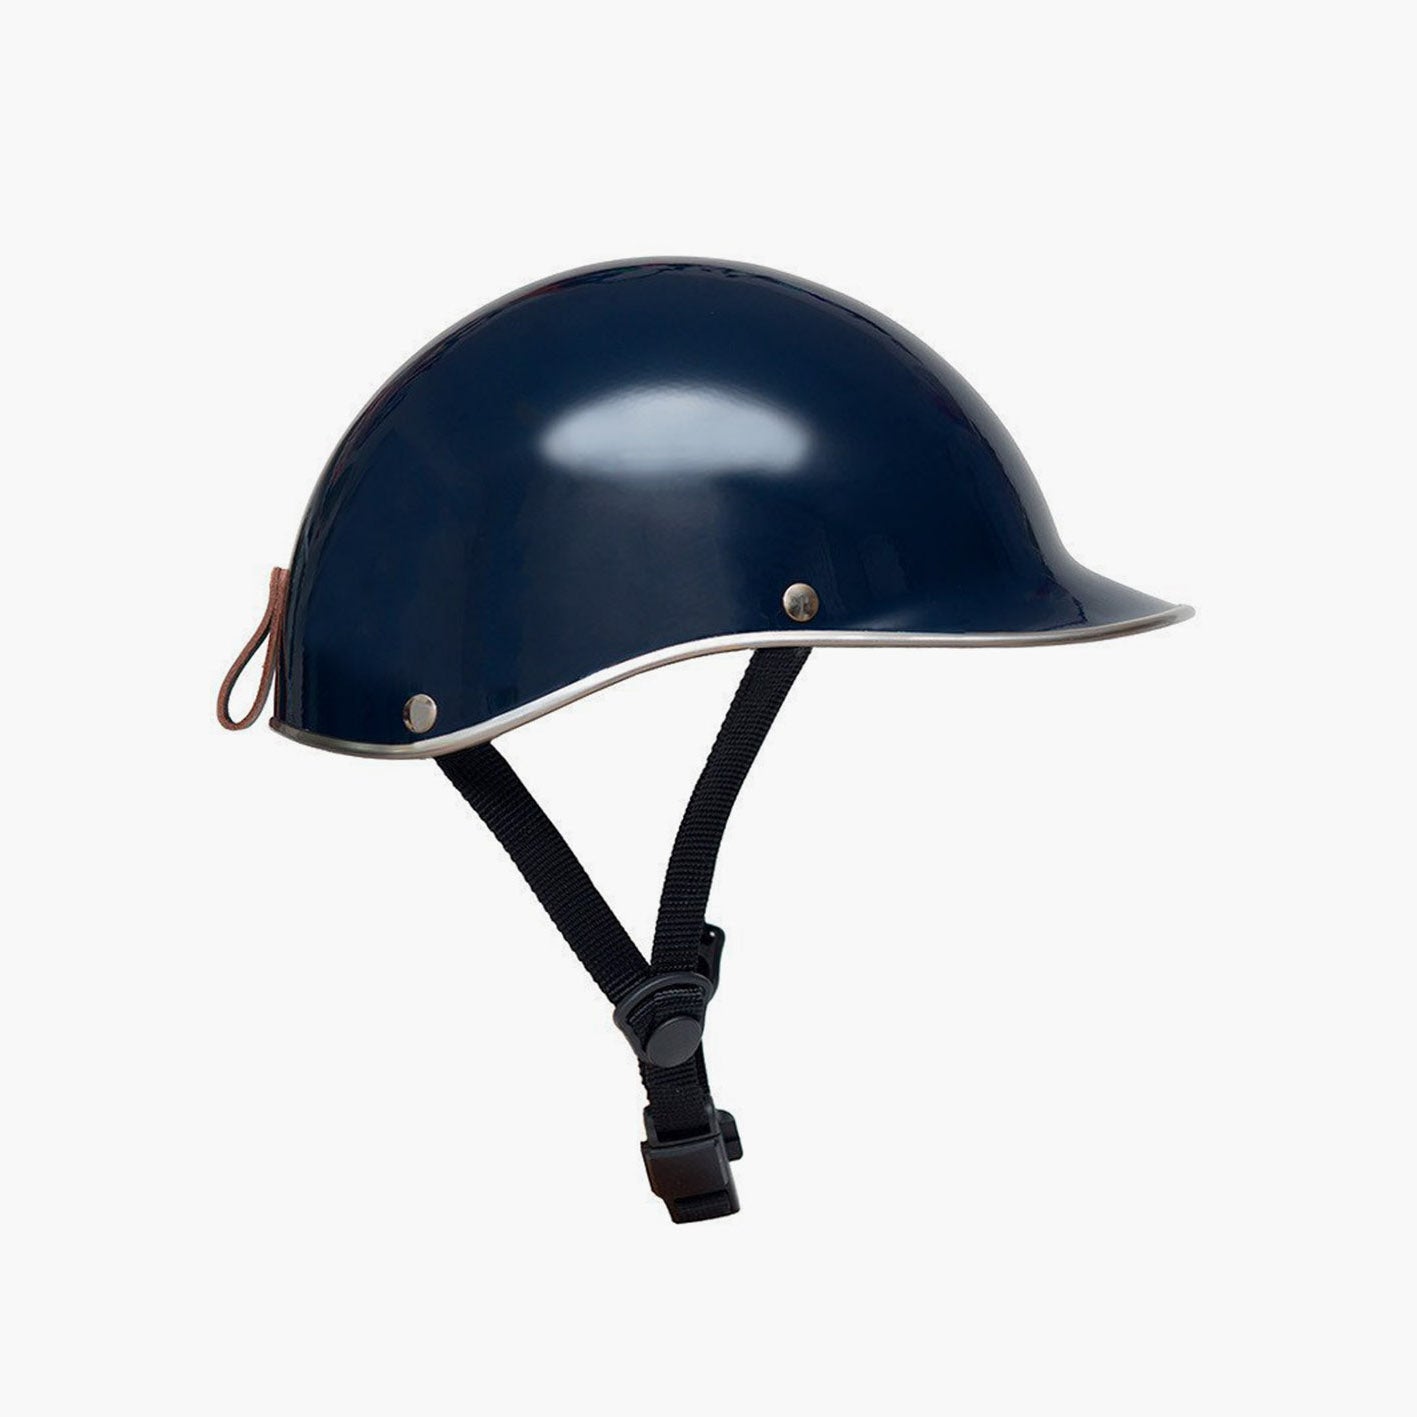 Dashel Carbon Fibre Edition Helmet